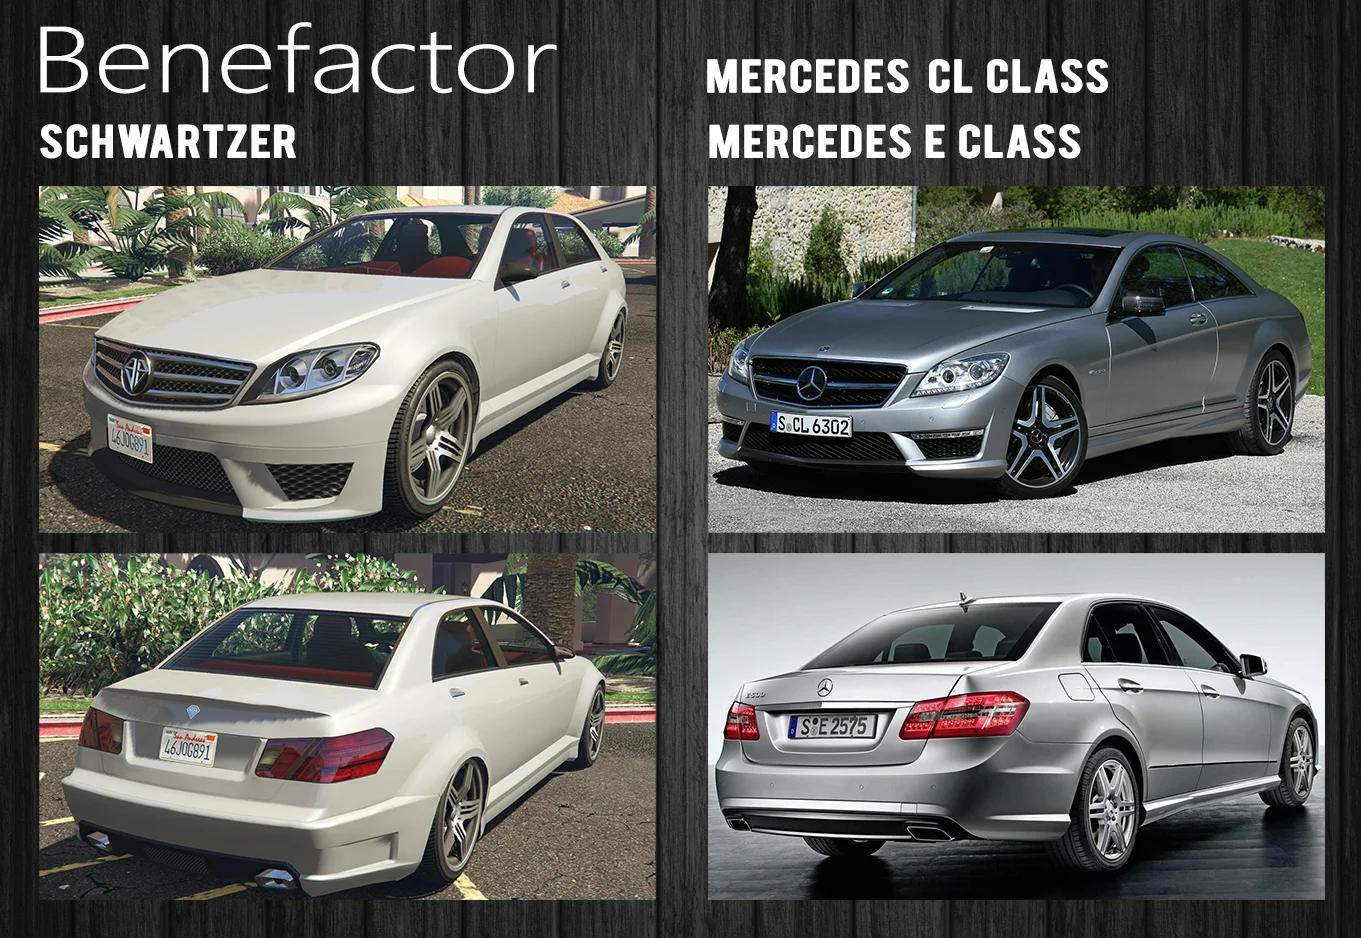 Другой пример «2 в 1», когда характерные черты двух Mercedes-Benz — купе CL и седана [E-Class](https://ru.motor1.com/news/302658/mercedes-benz-pristupil-k-testam-novogo-e-class/) — объединились в одной машине.